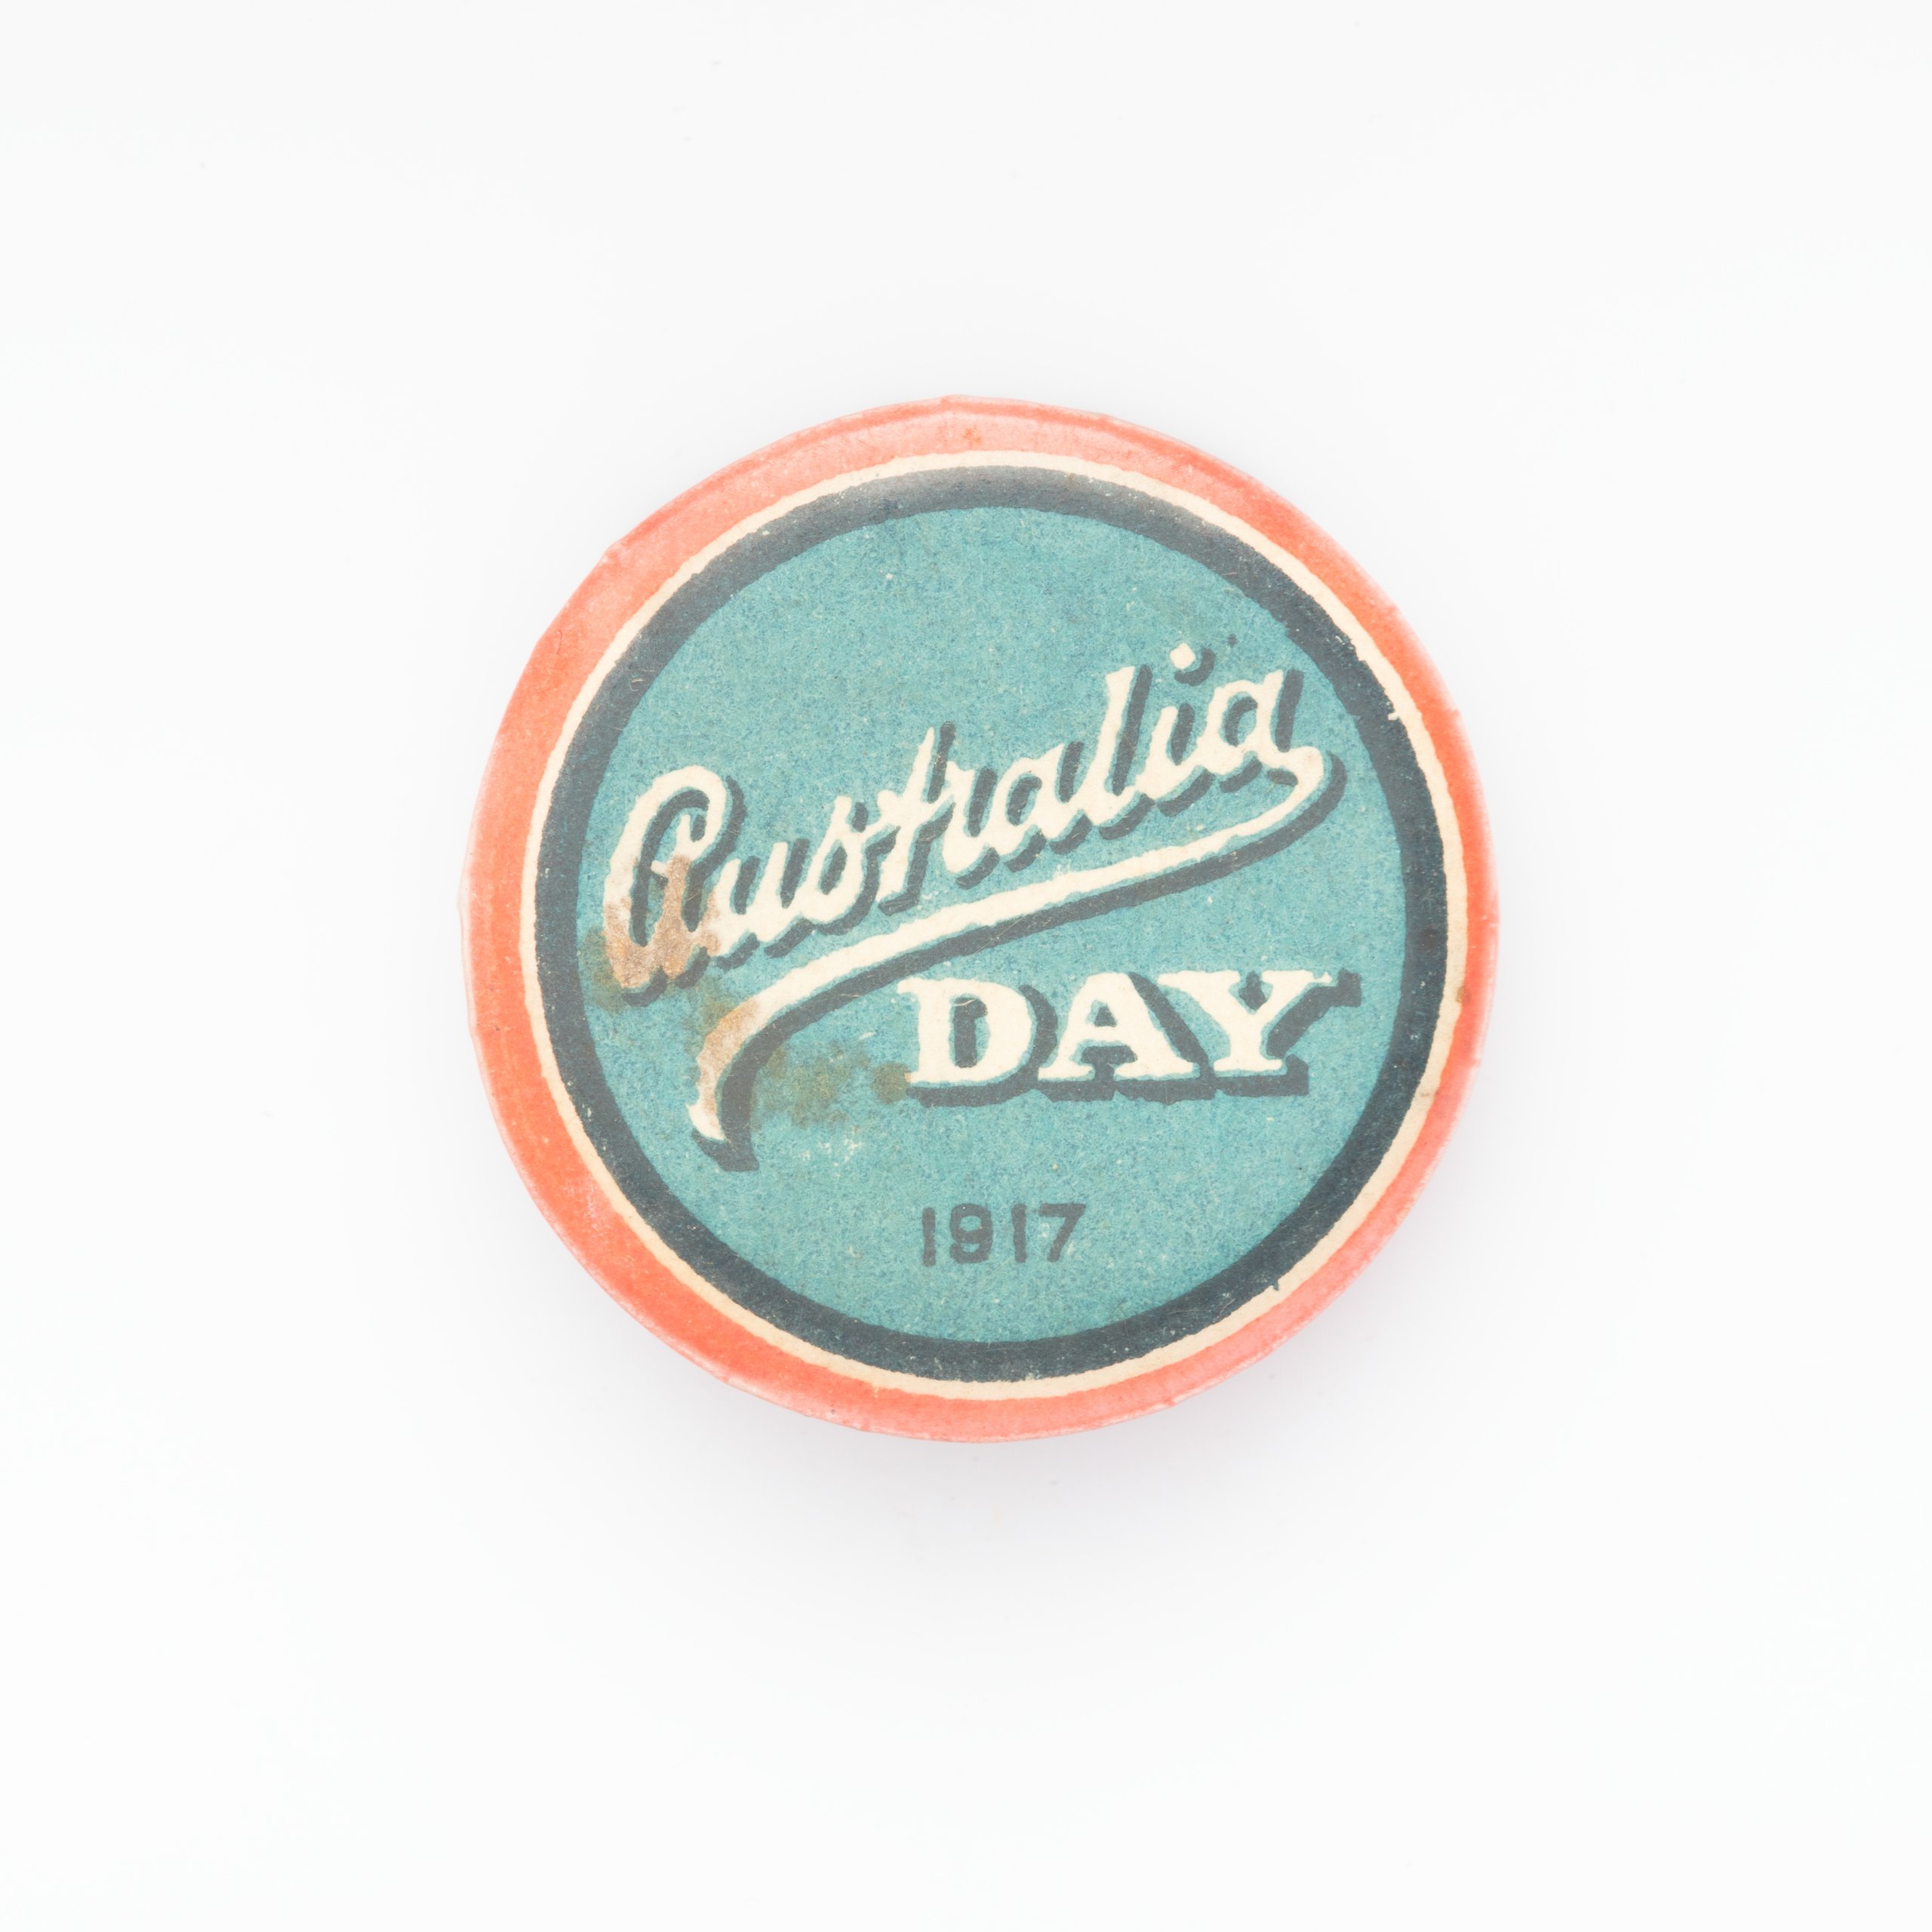 'Australia Day 1917' badge